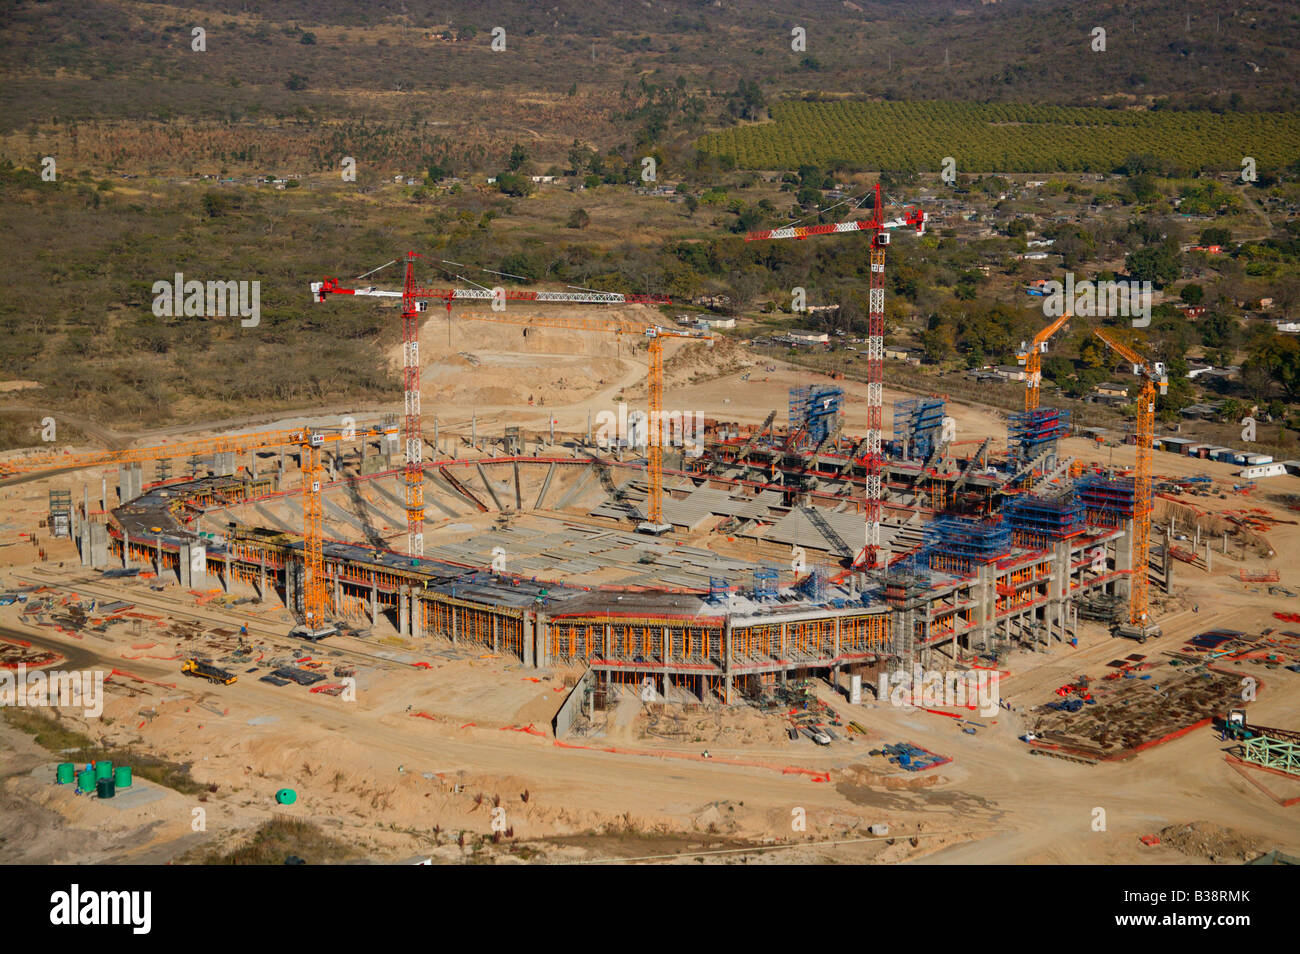 Vista aerea del Mbombela 2010 Soccer world cup stadium durante la costruzione di Nelspruit Foto Stock